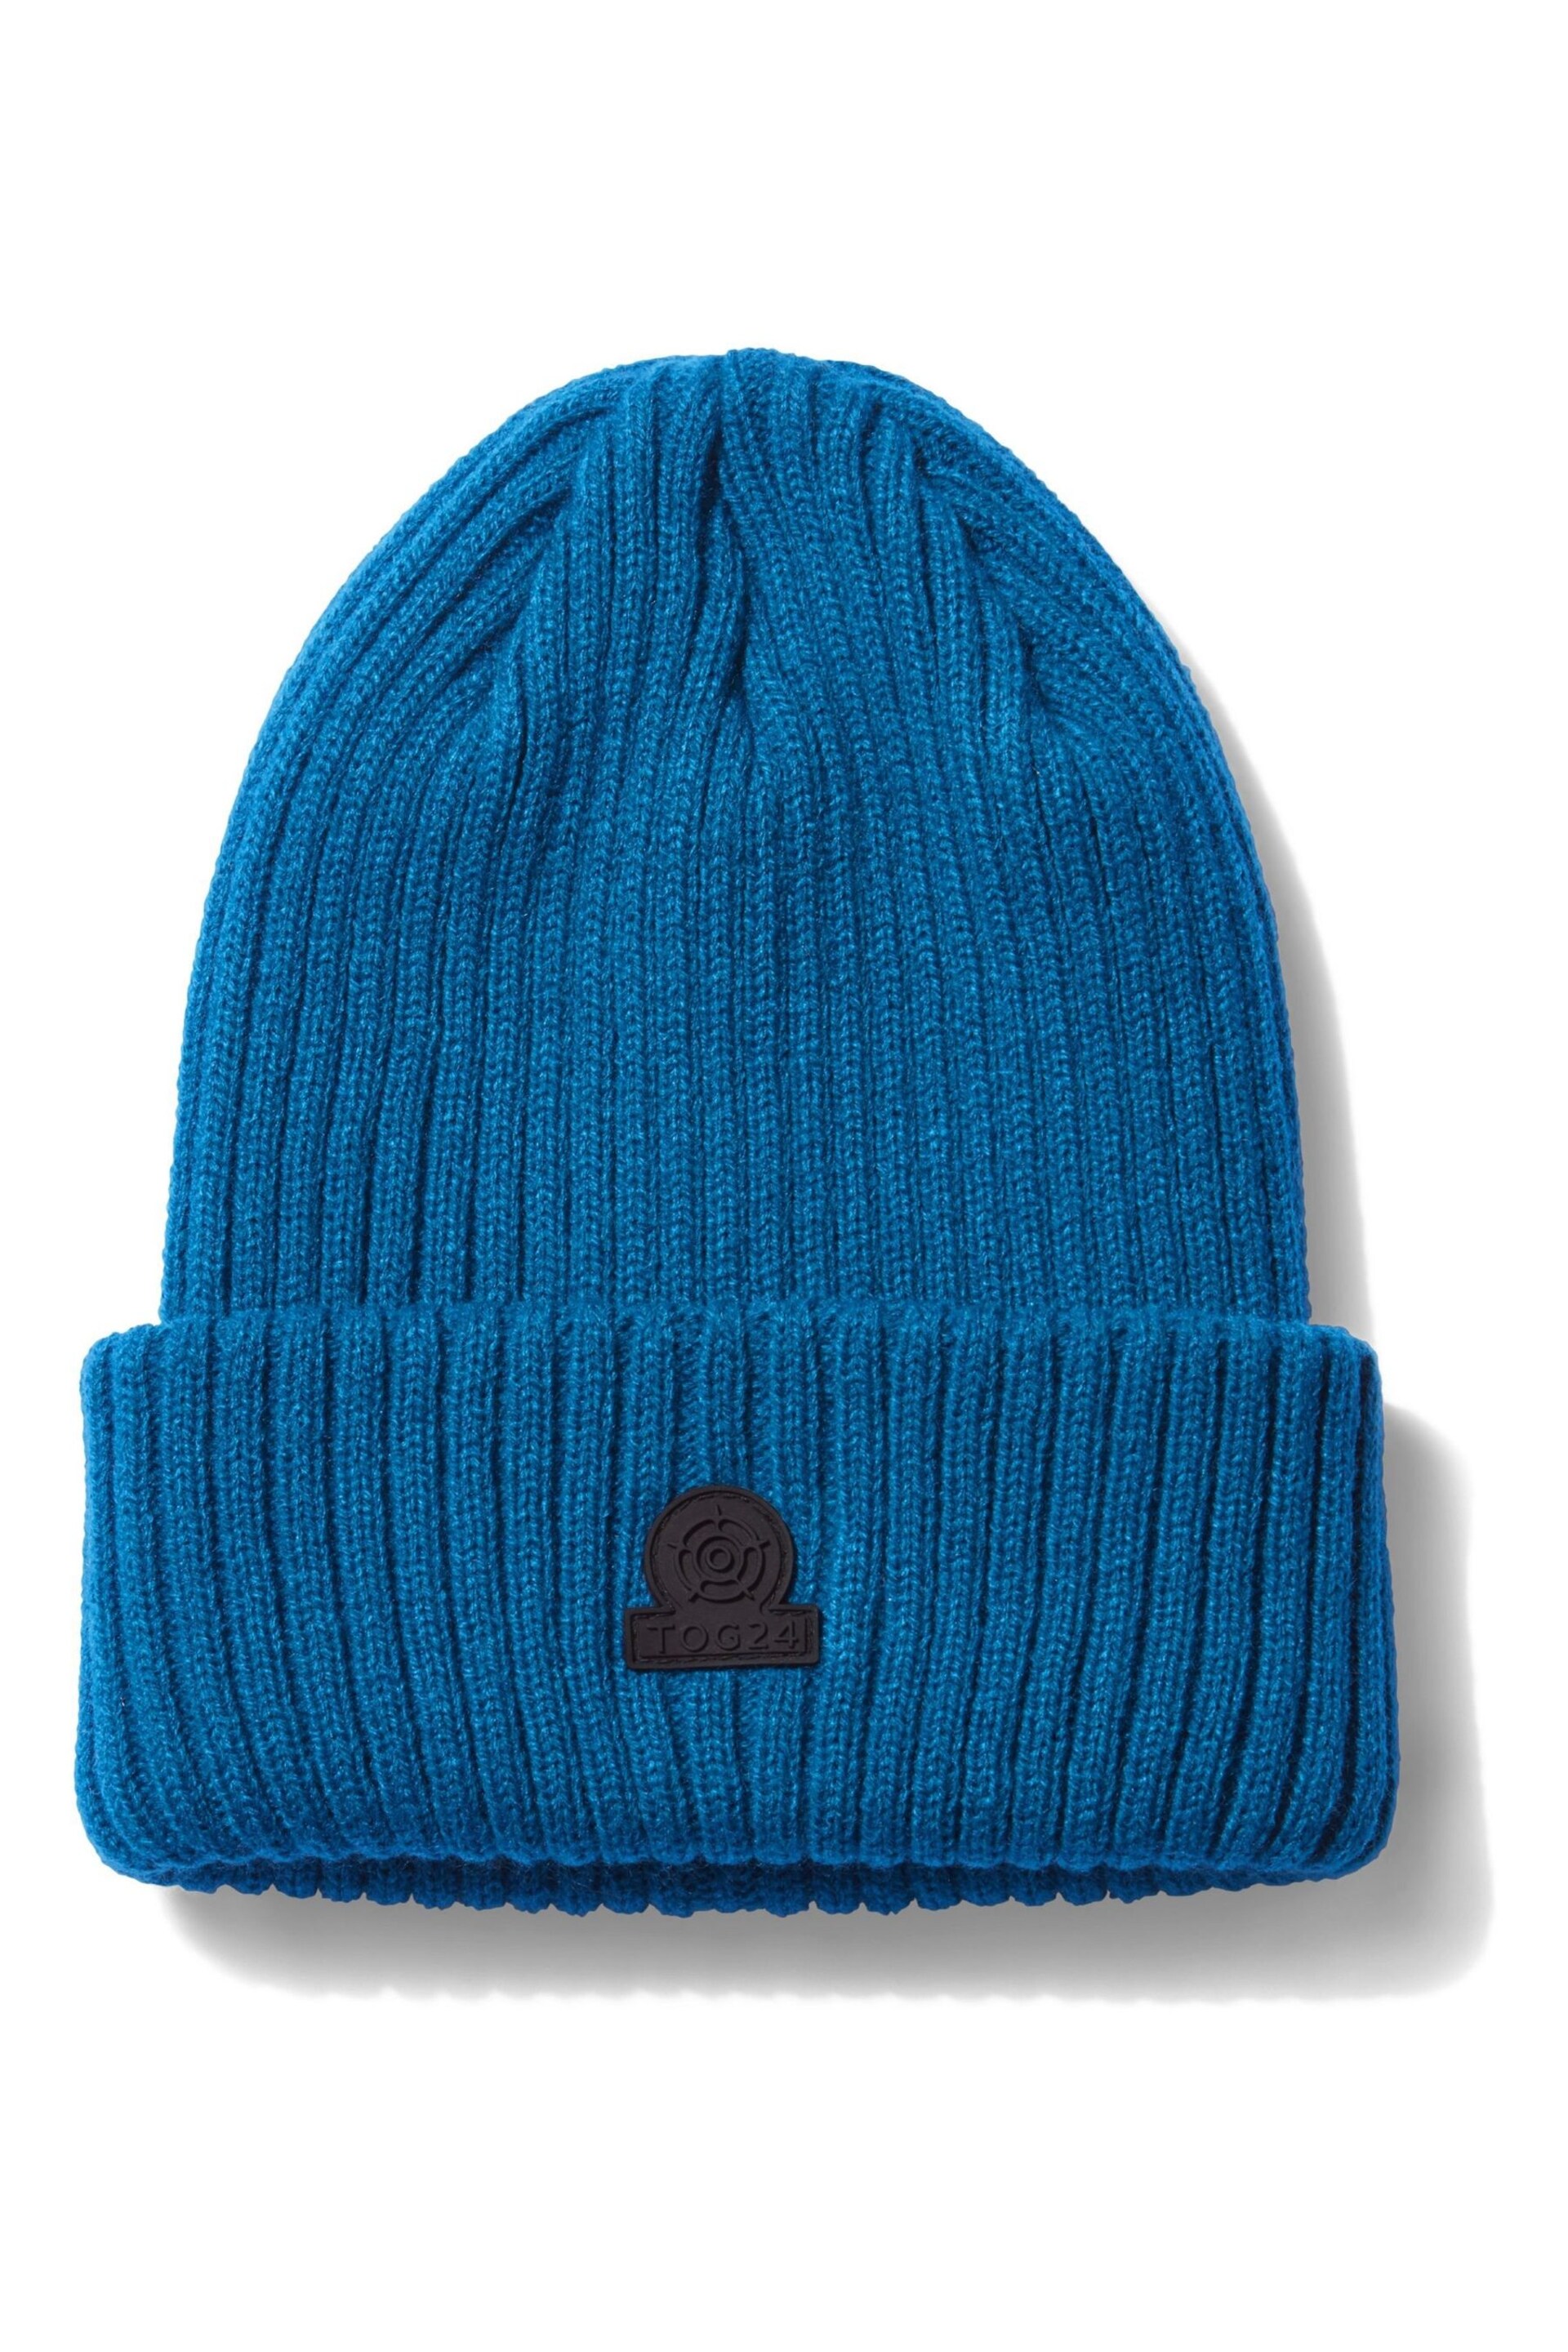 Tog 24 Blue Burke Knit Hat - Image 2 of 2